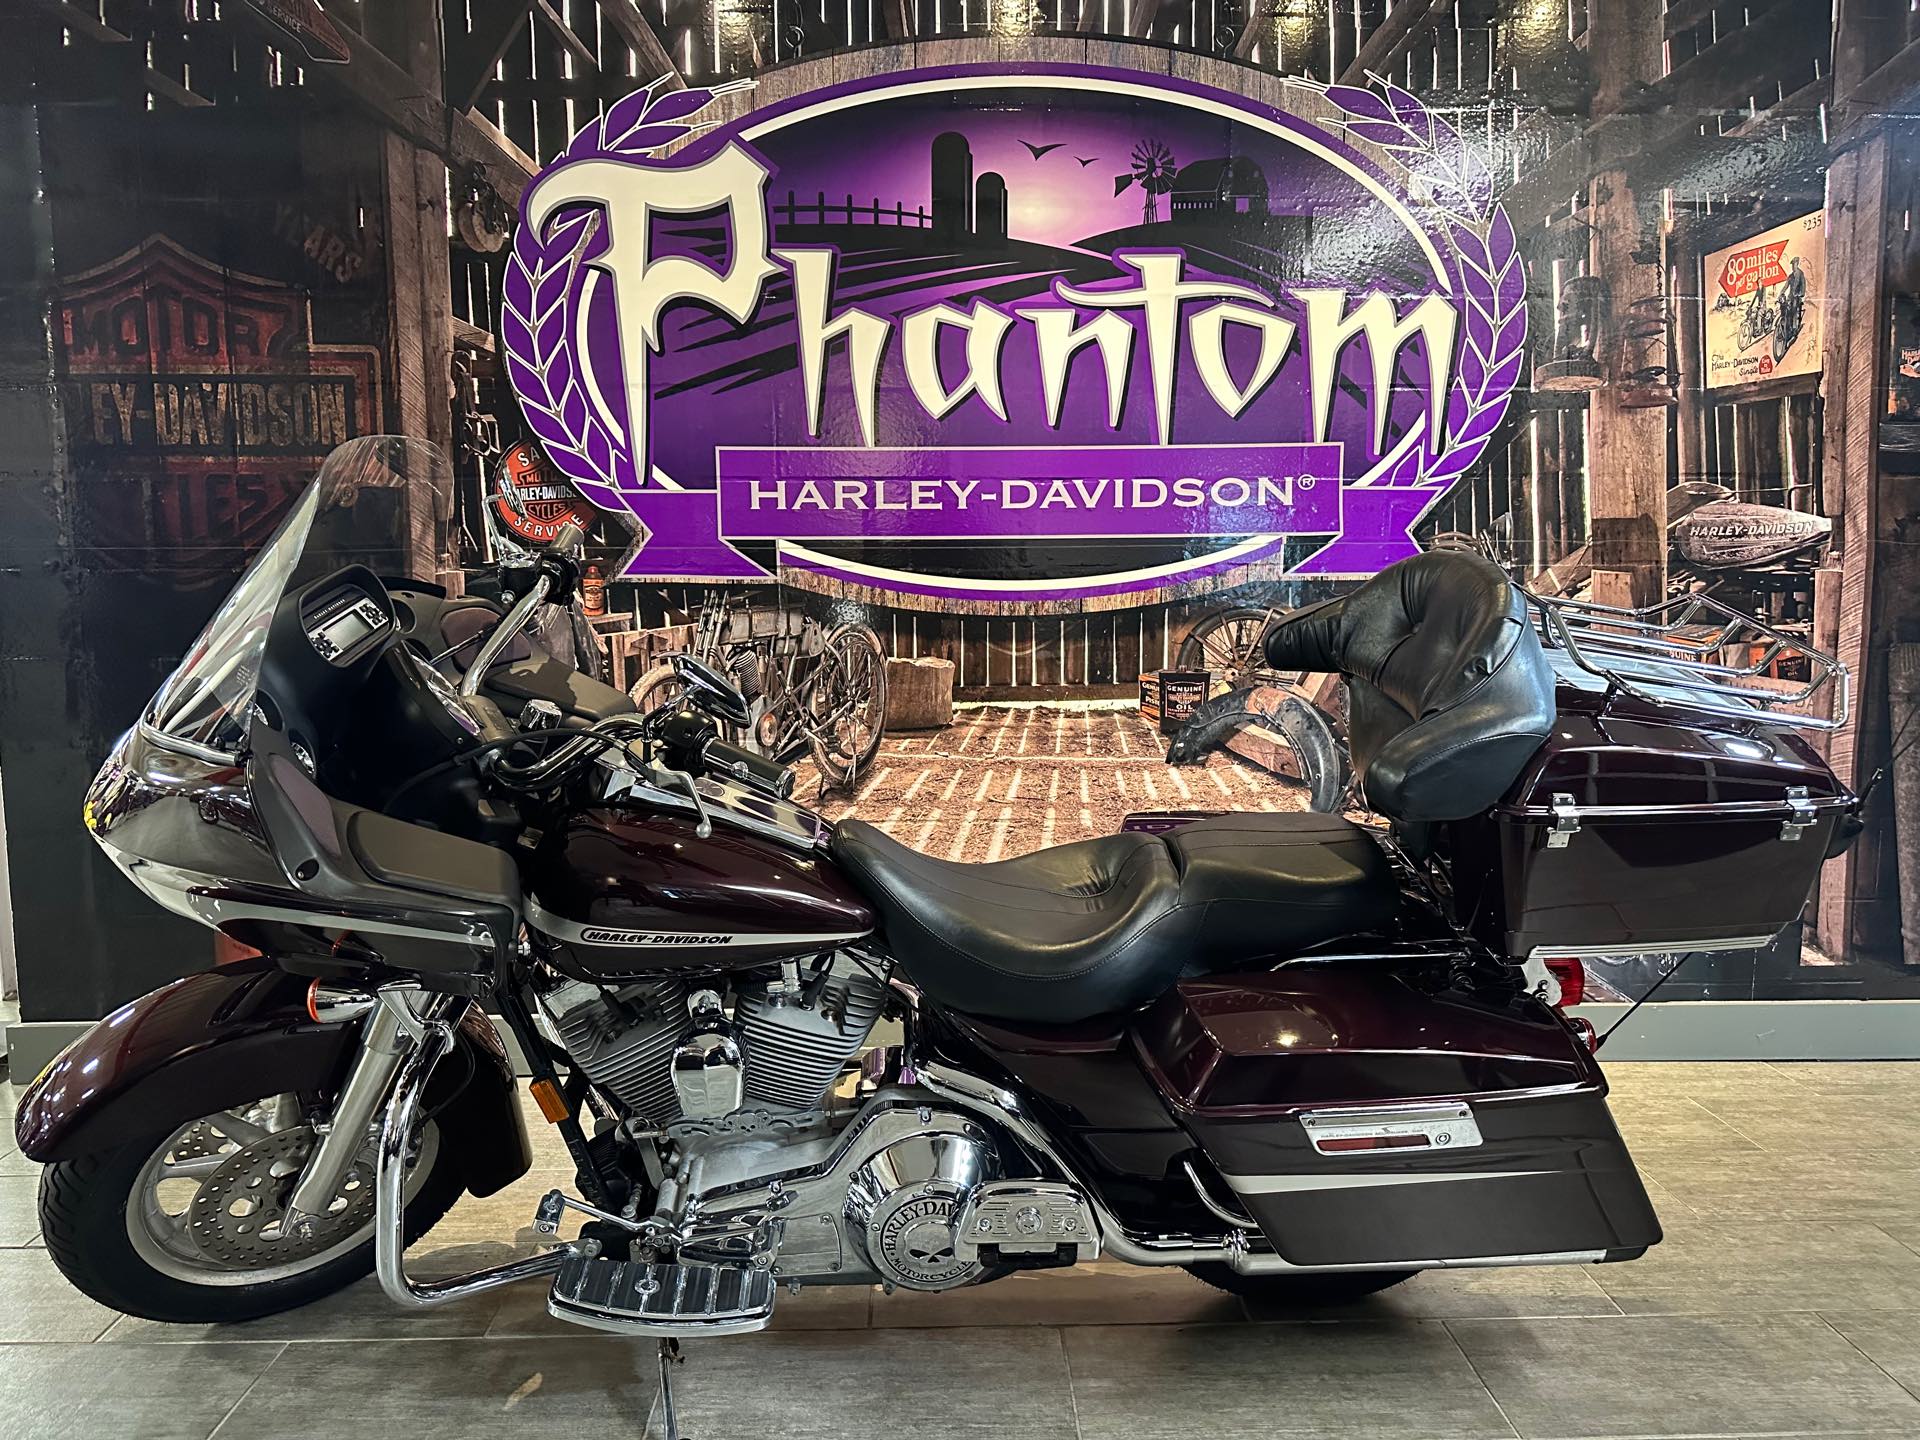 2006 Harley-Davidson Road Glide Base at Phantom Harley-Davidson